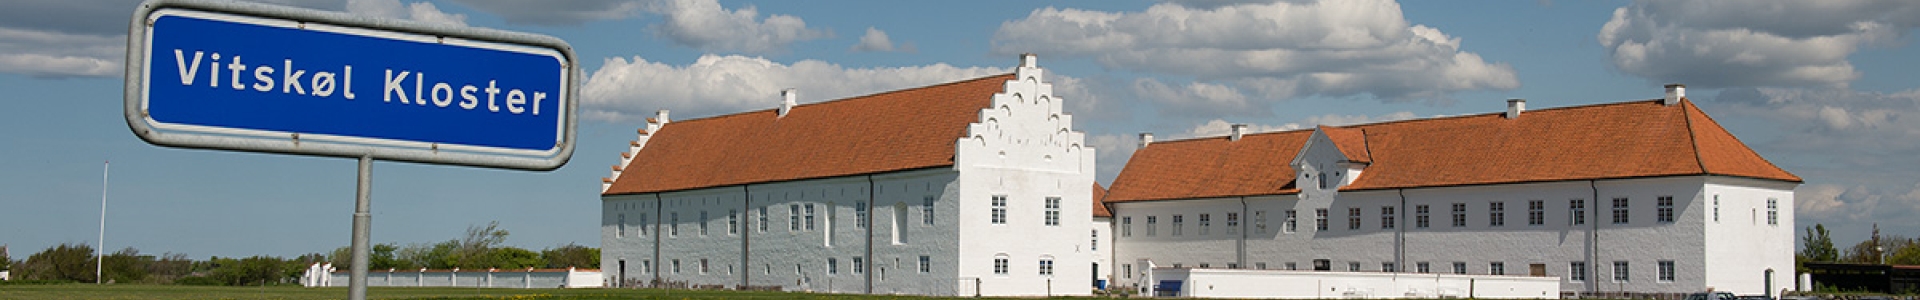 Danhostel Vitskøl Kloster